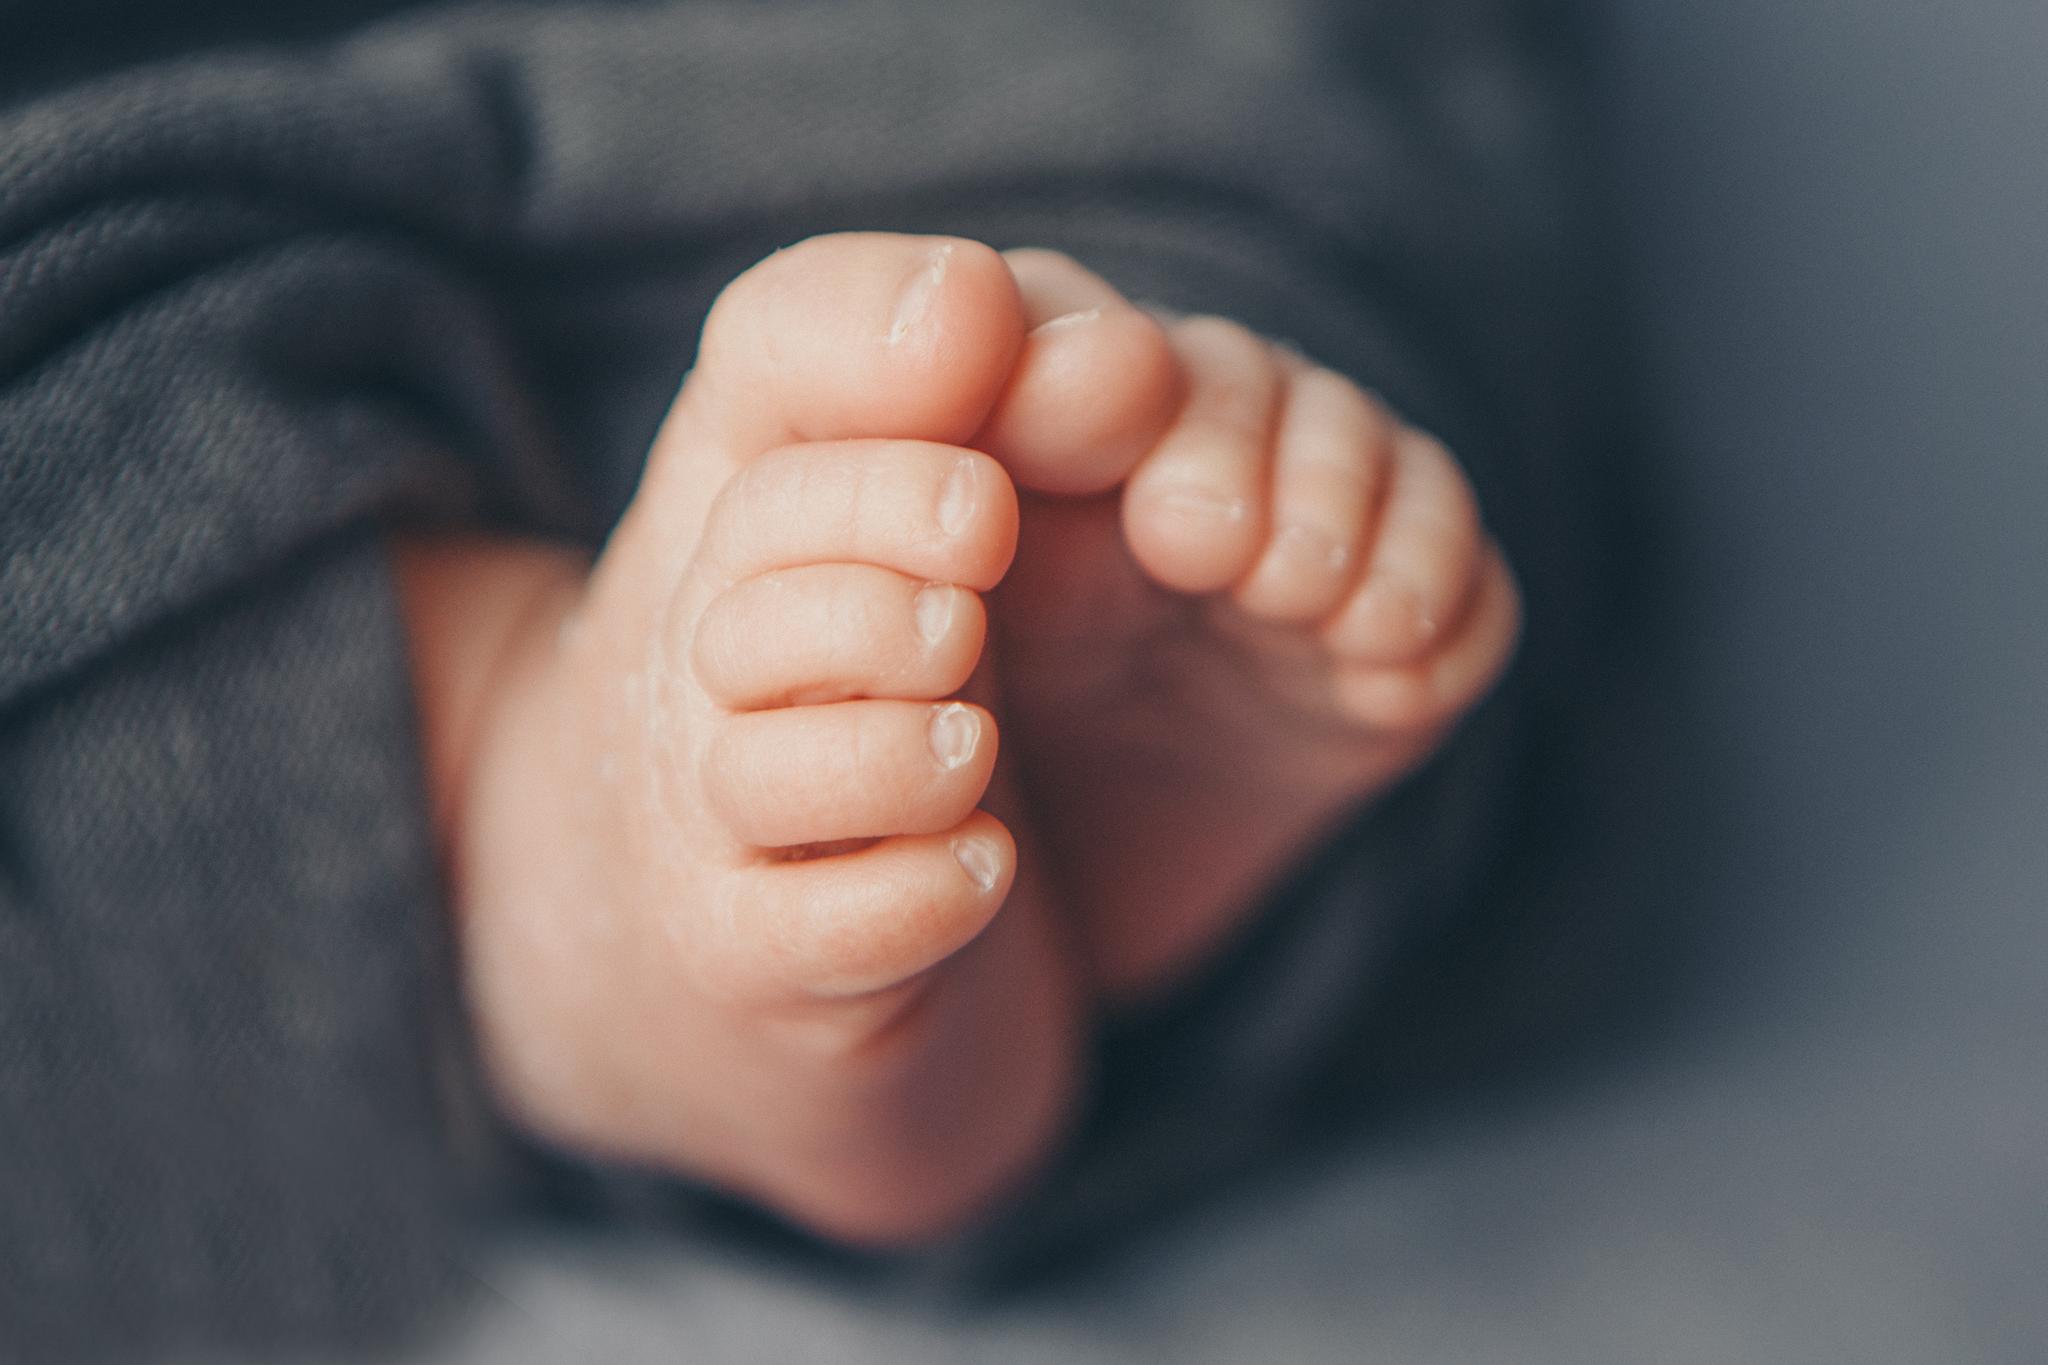 Det kan være utfordrende å bevare gnisten i parforholdet når en liten baby tar all oppmerksomhet. Men ifølge ekspertene finnes det råd.